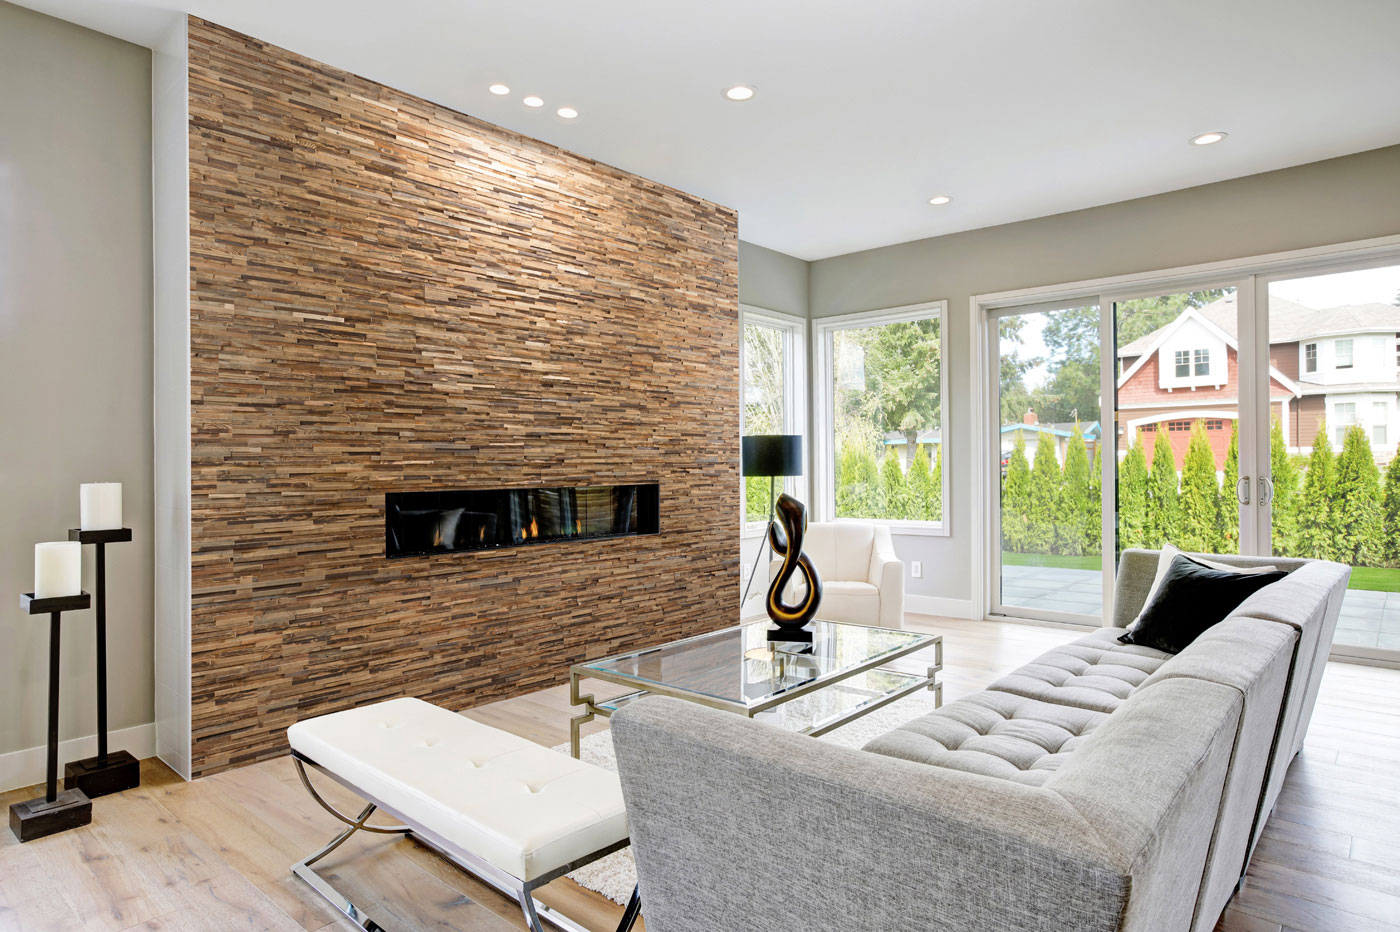 Raumbild Holzpaneel Holzklinker Riemchen Incognito im Wohnzimmer mit Kamin